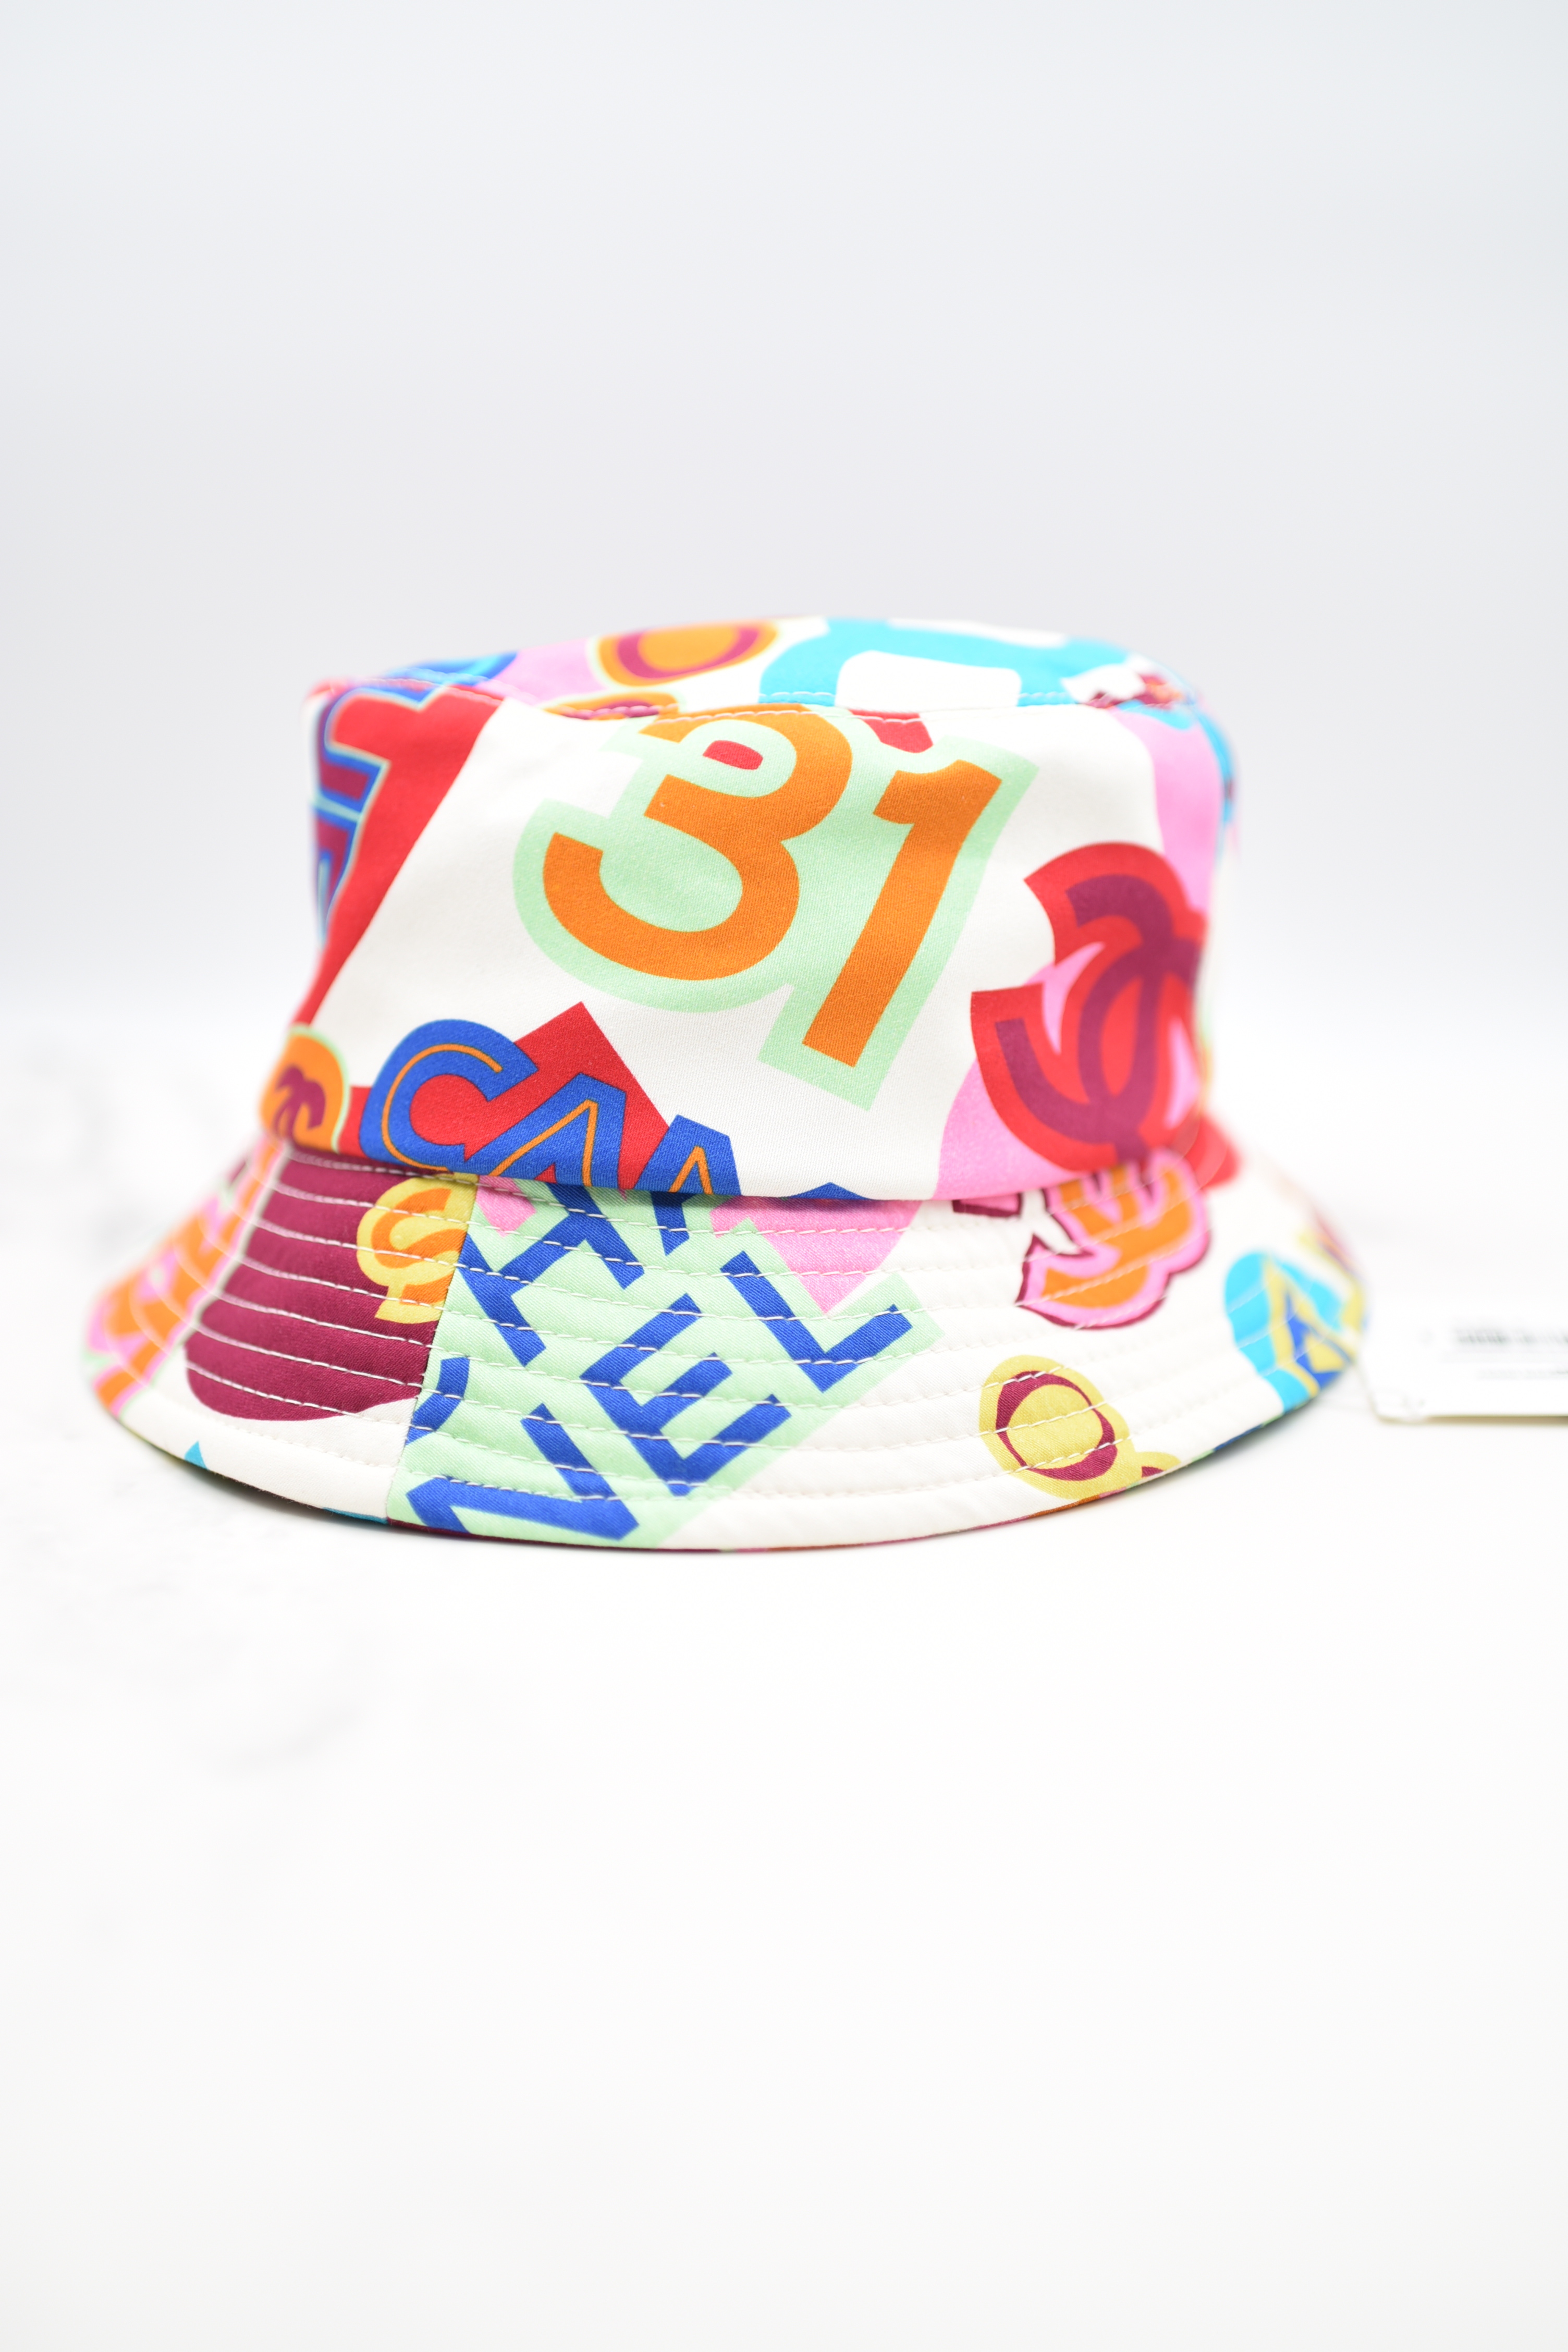 Chanel Bucket Hat, Multi-color Print with Sequin CC, Size Small, New GA001  - Julia Rose Boston